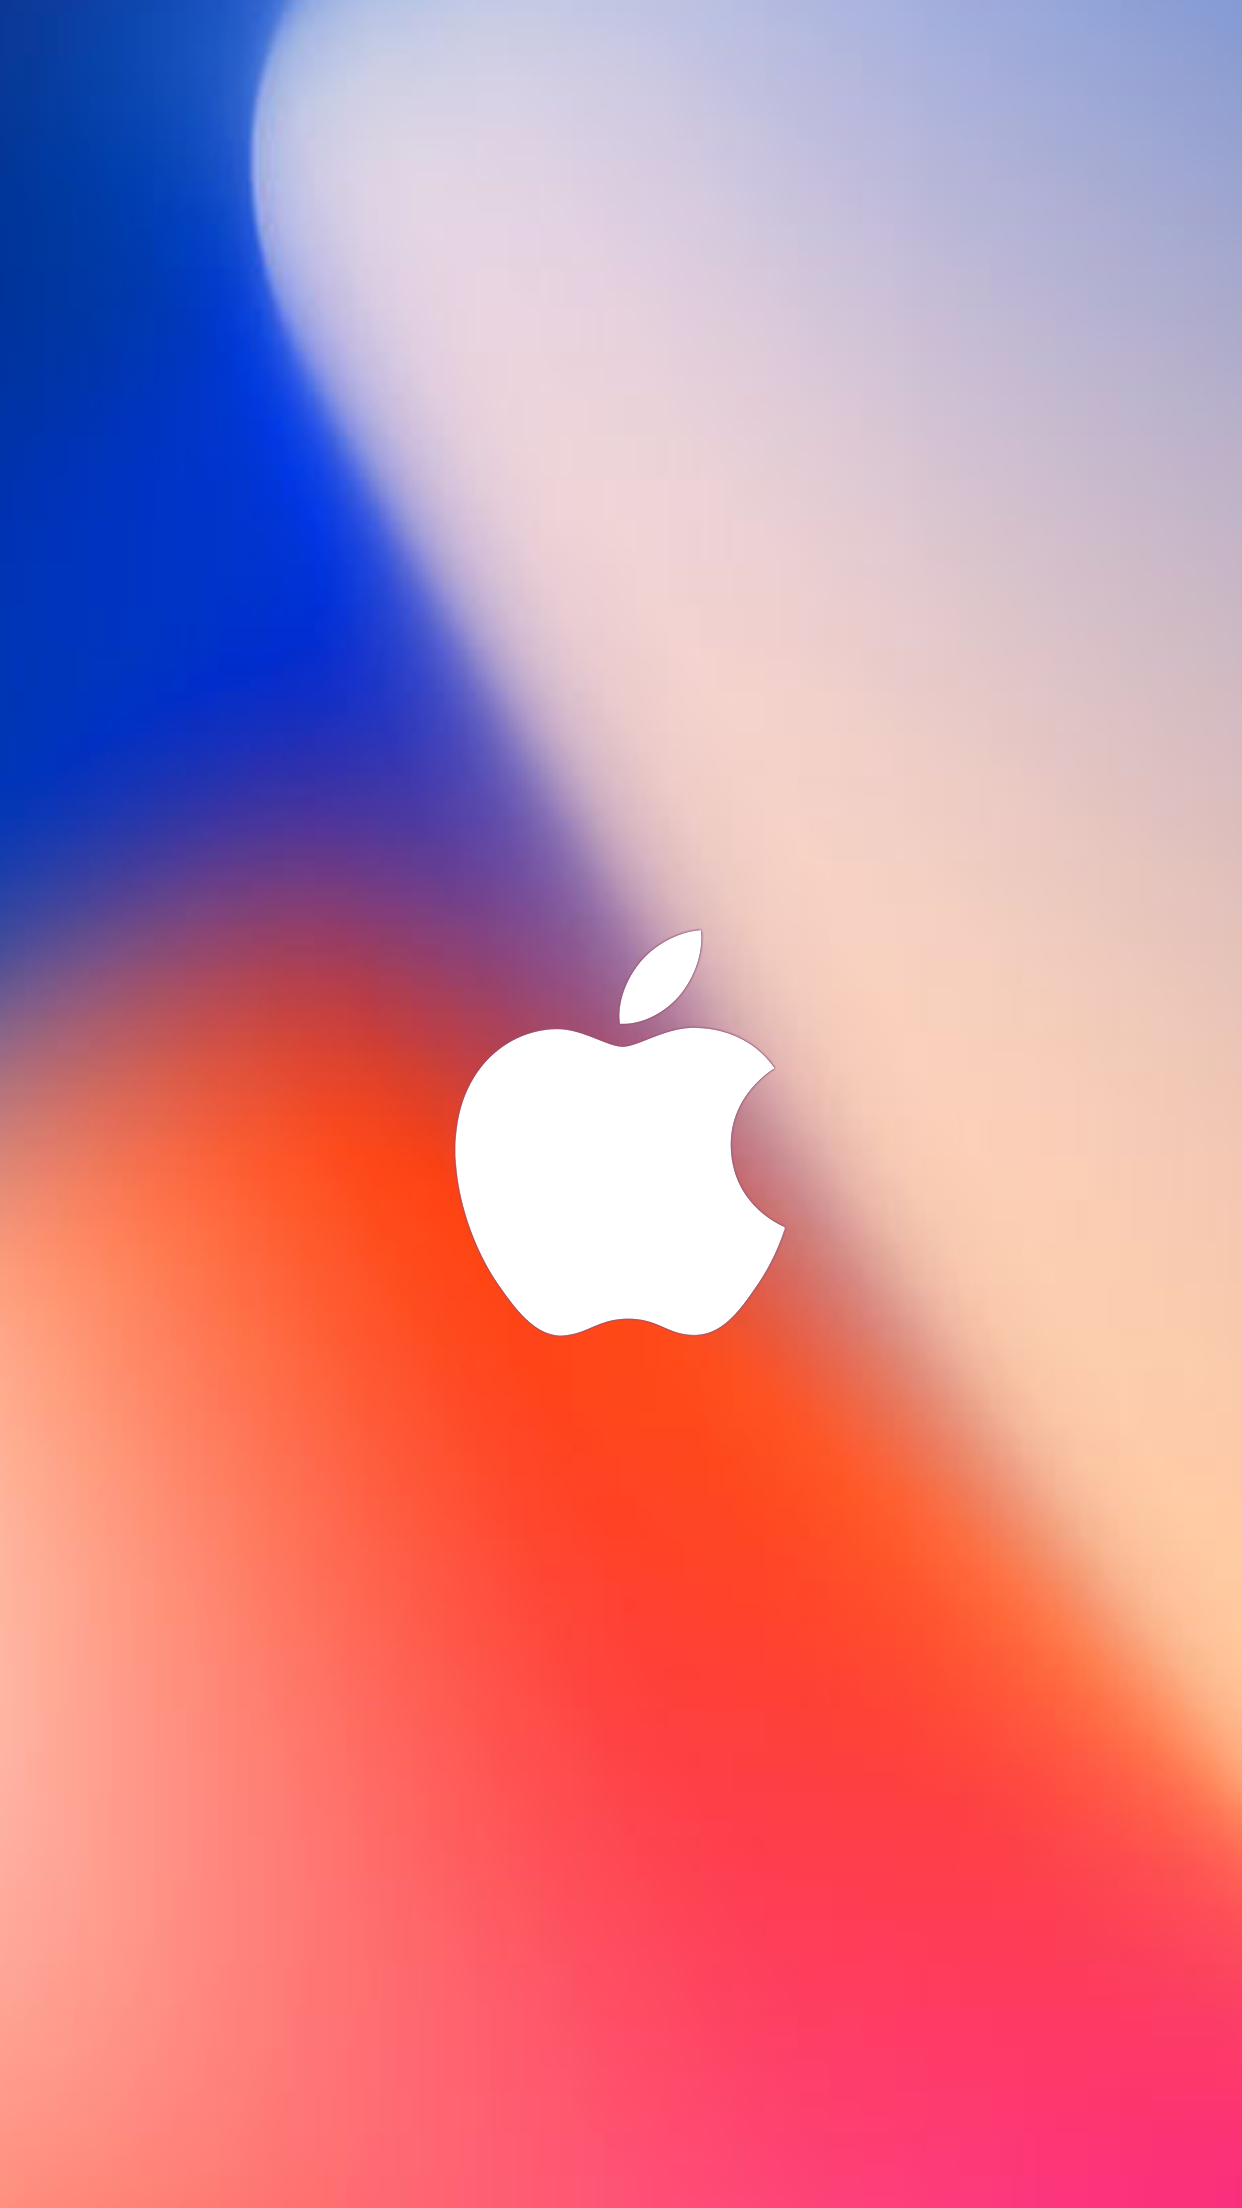 iphone logo wallpaper,cielo,tiempo de día,naranja,corazón,nube